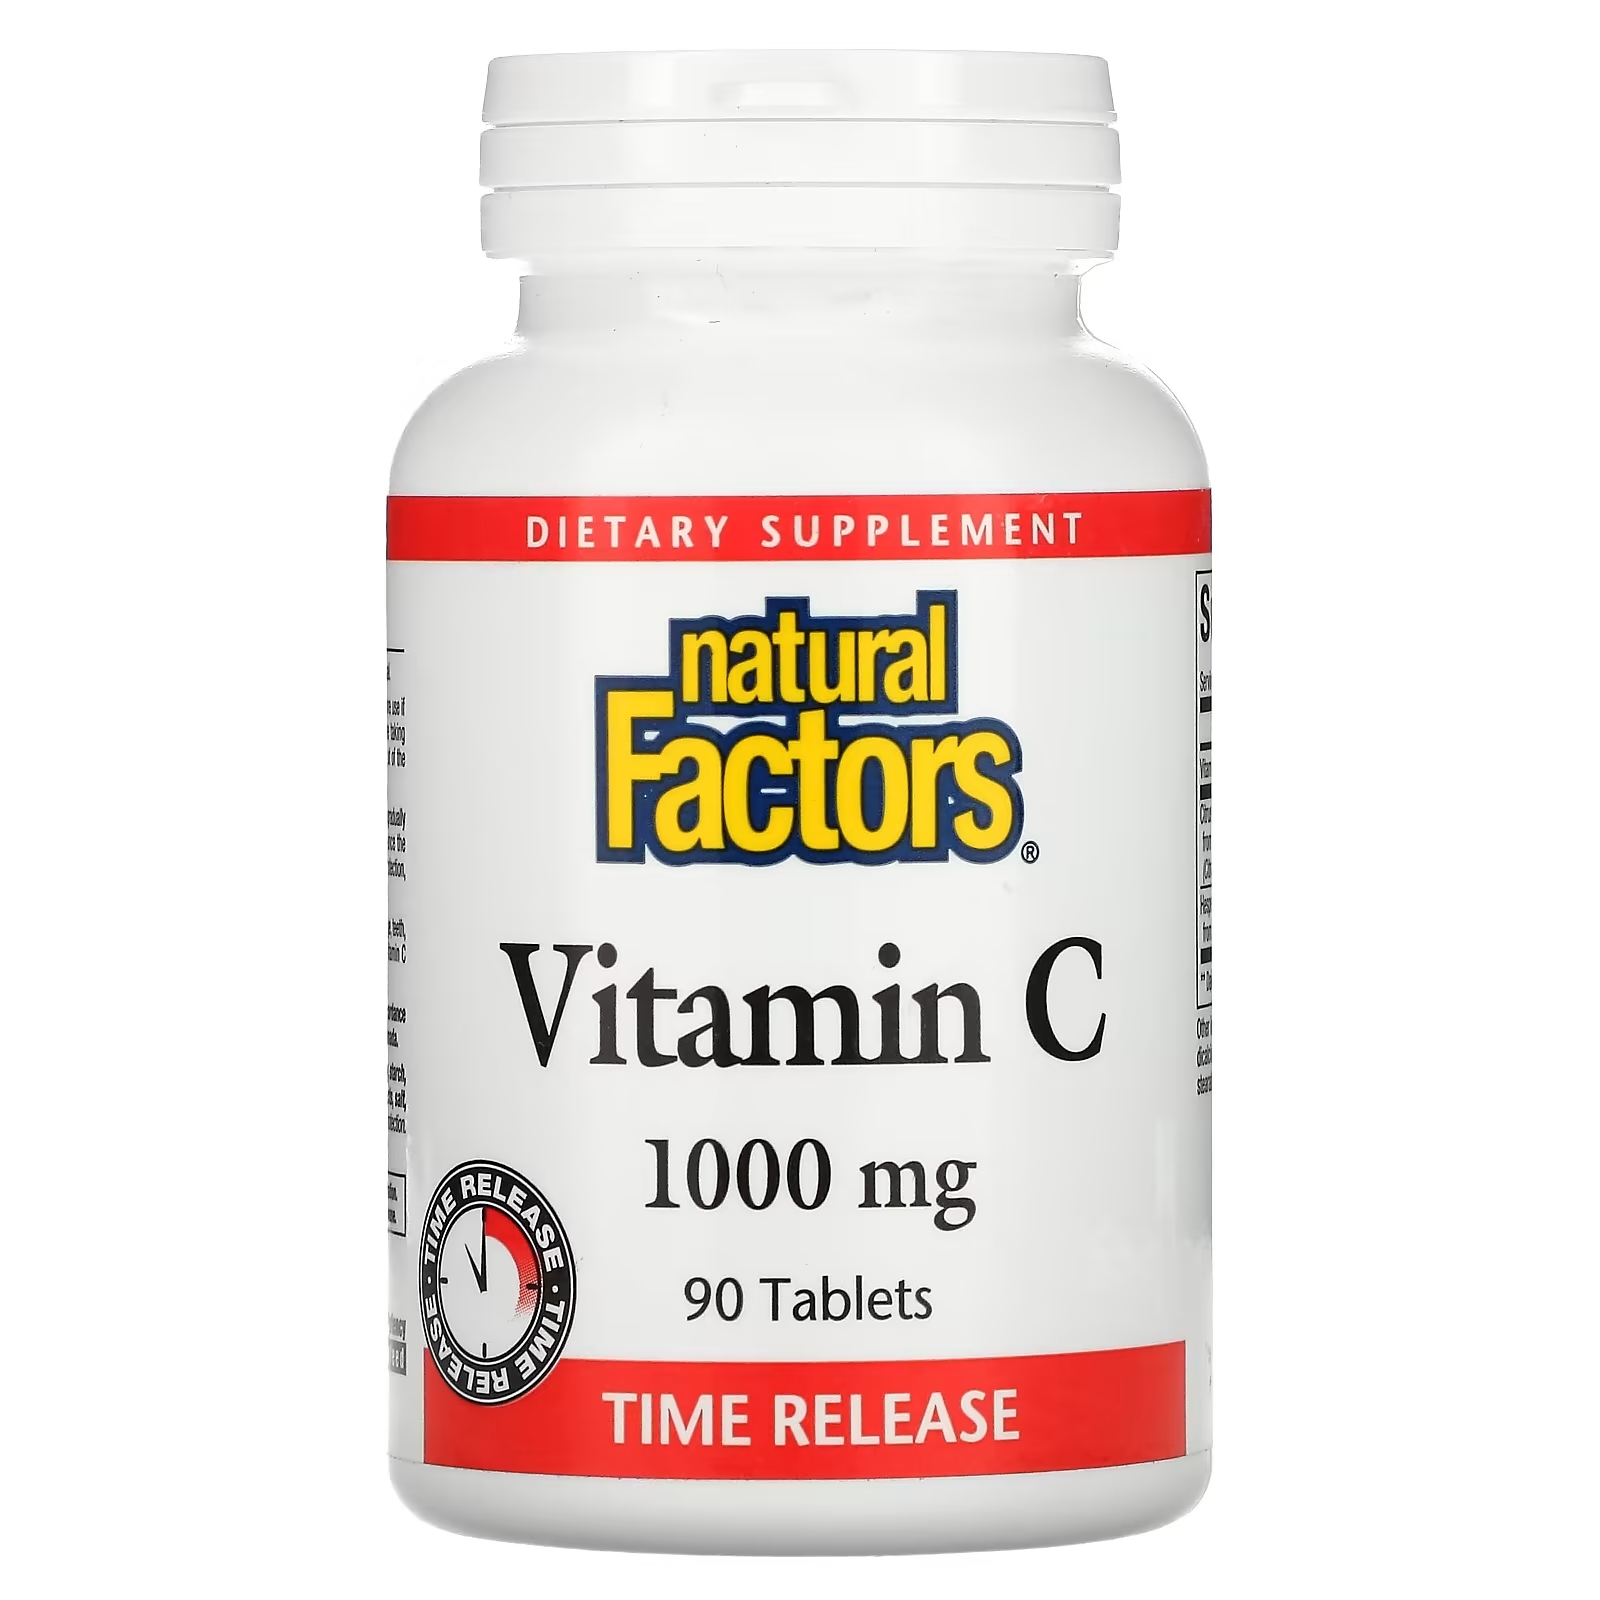 Natural Factors витамин C 1000 мг с медленным высвобождением, 90 таблеток витамин c natural factors 250 мг 90 таблеток